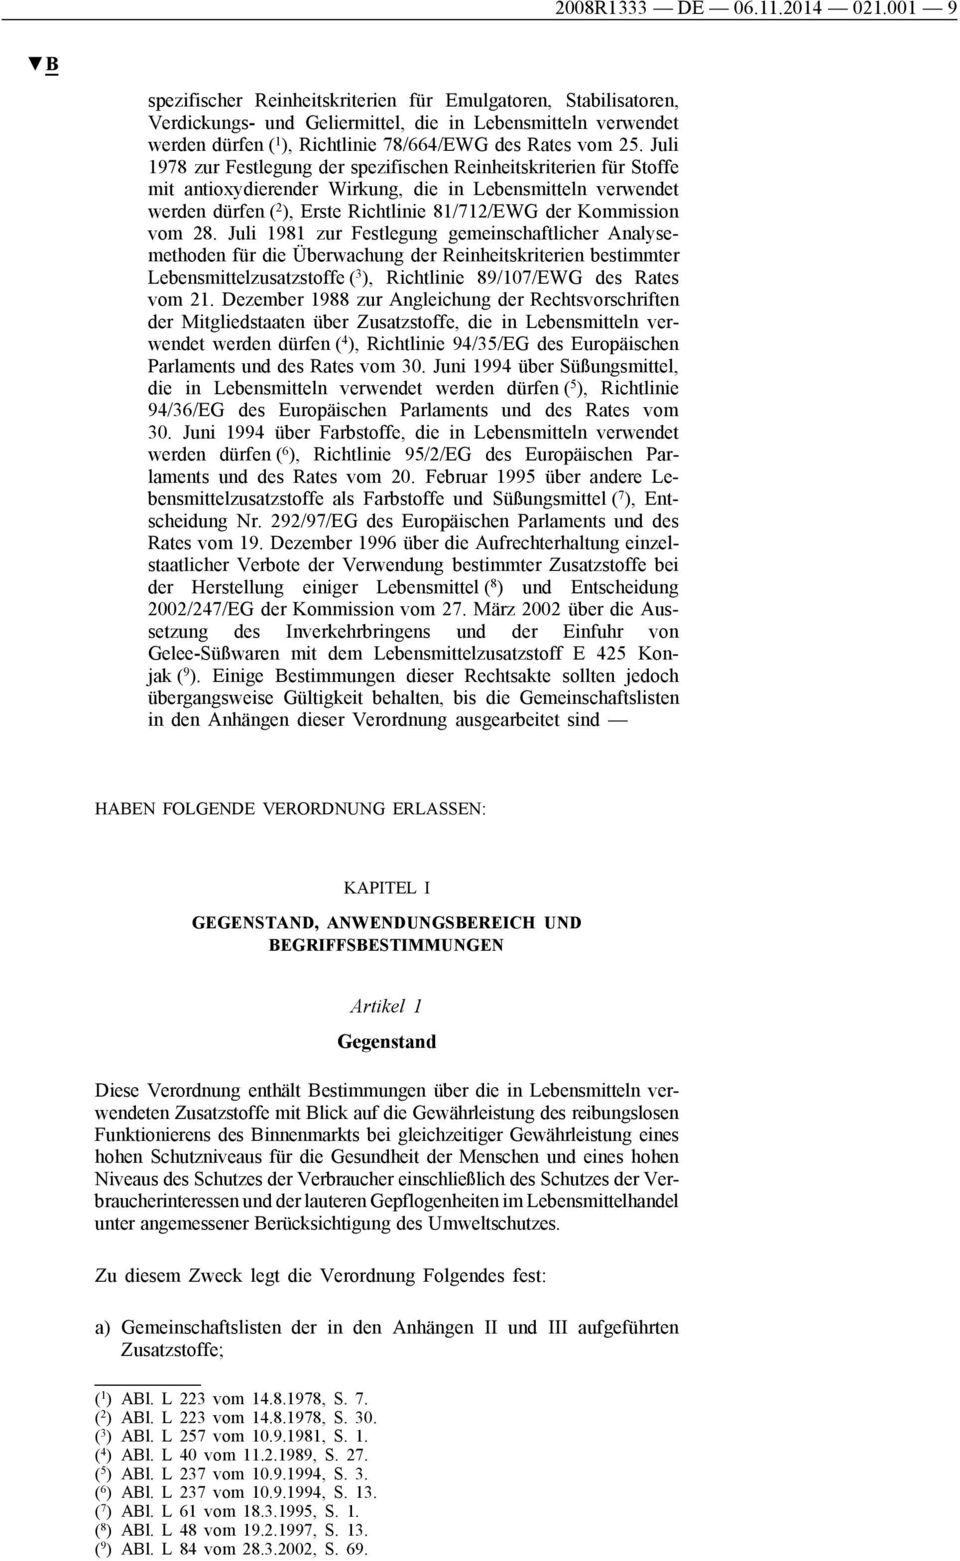 Juli 1978 zur Festlegung der spezifischen Reinheitskriterien für Stoffe mit antioxydierender Wirkung, die in Lebensmitteln verwendet werden dürfen ( 2 ), Erste Richtlinie 81/712/EWG der Kommission